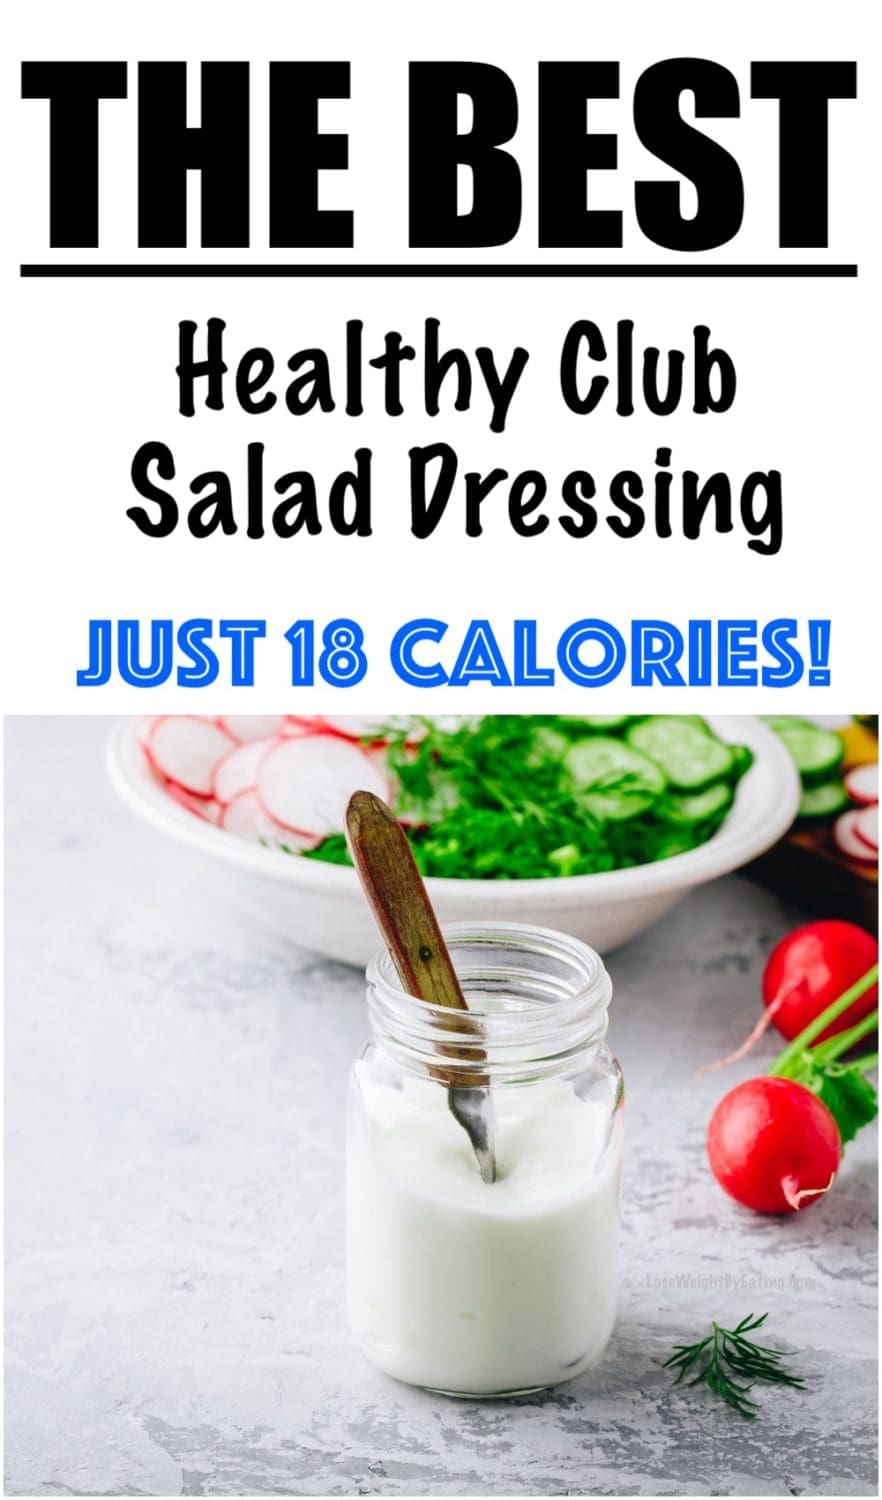 Club Salad Dressing with Greek Yogurt